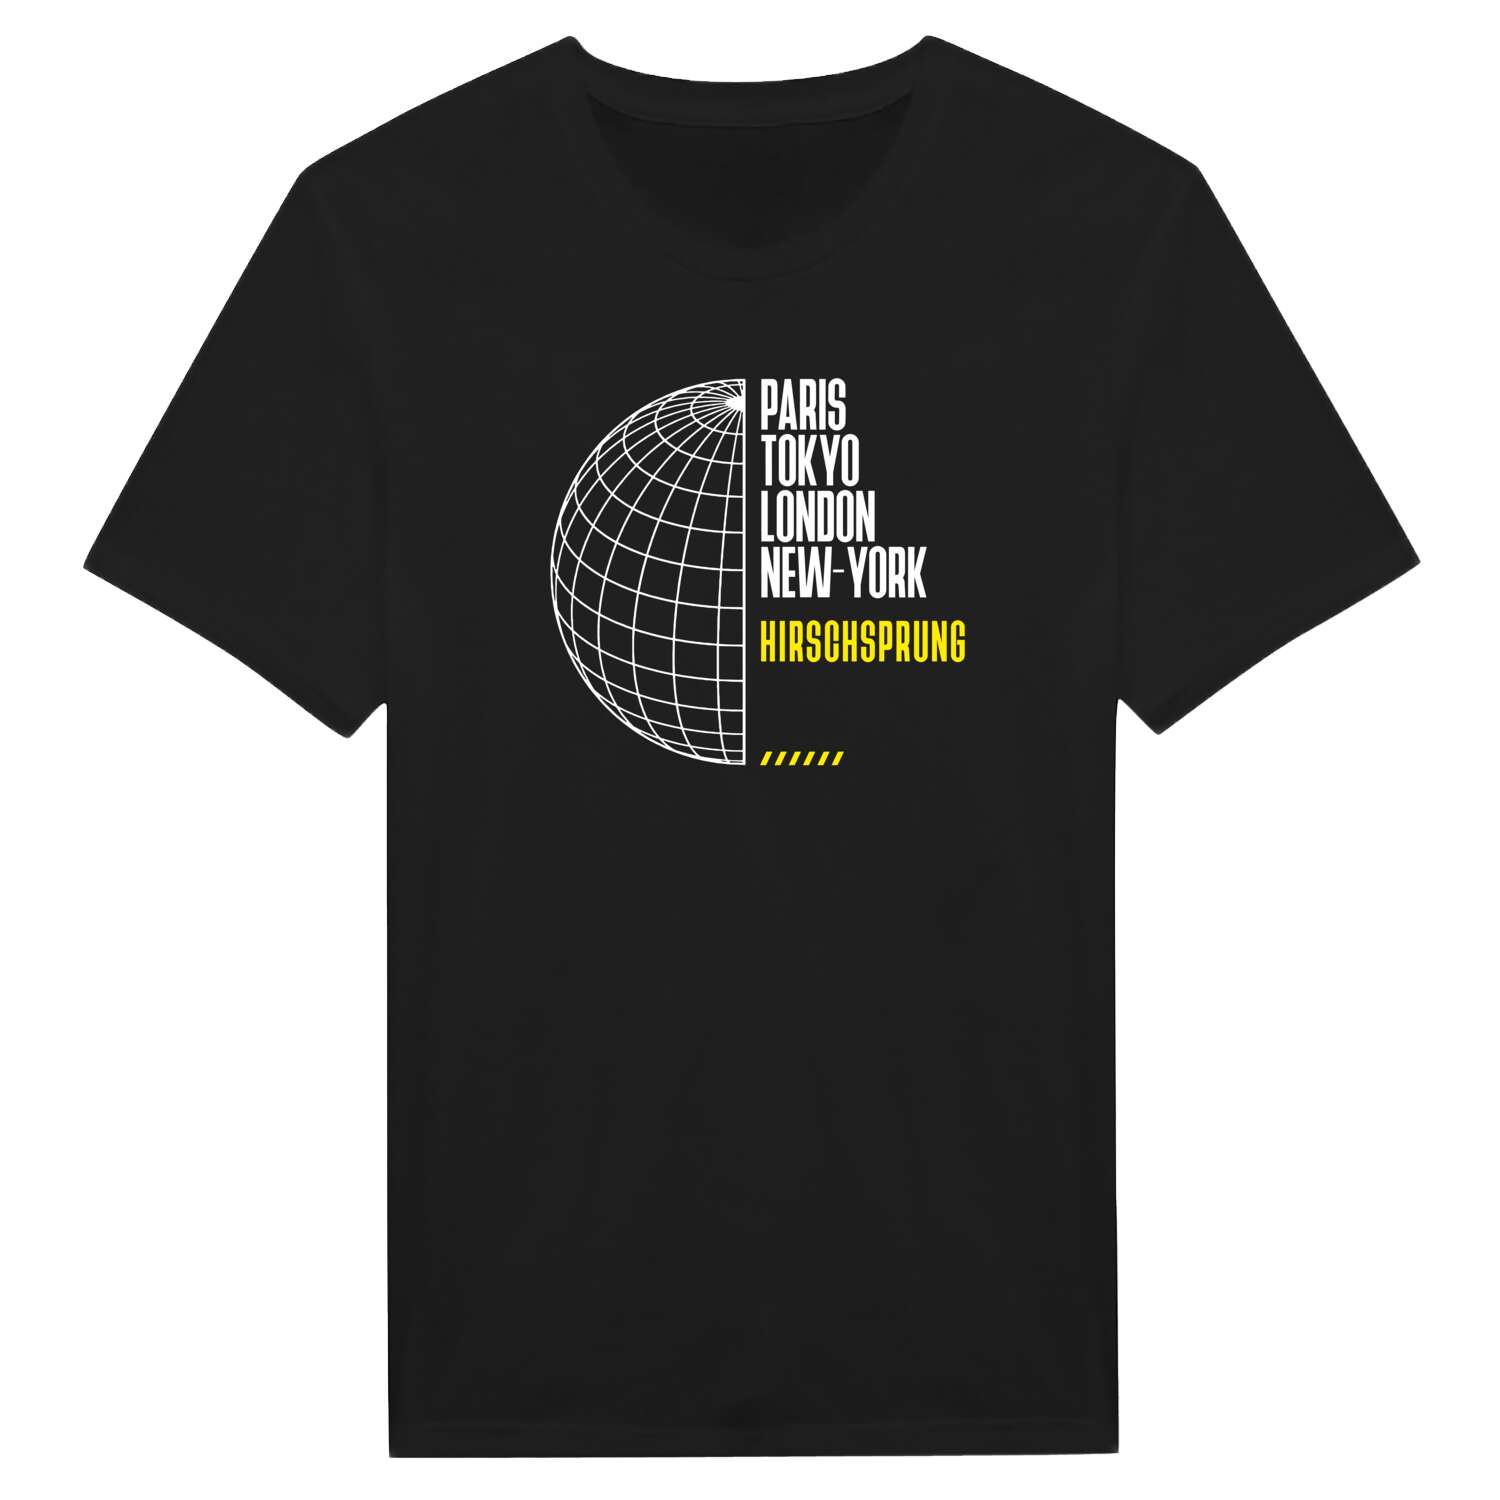 Hirschsprung T-Shirt »Paris Tokyo London«